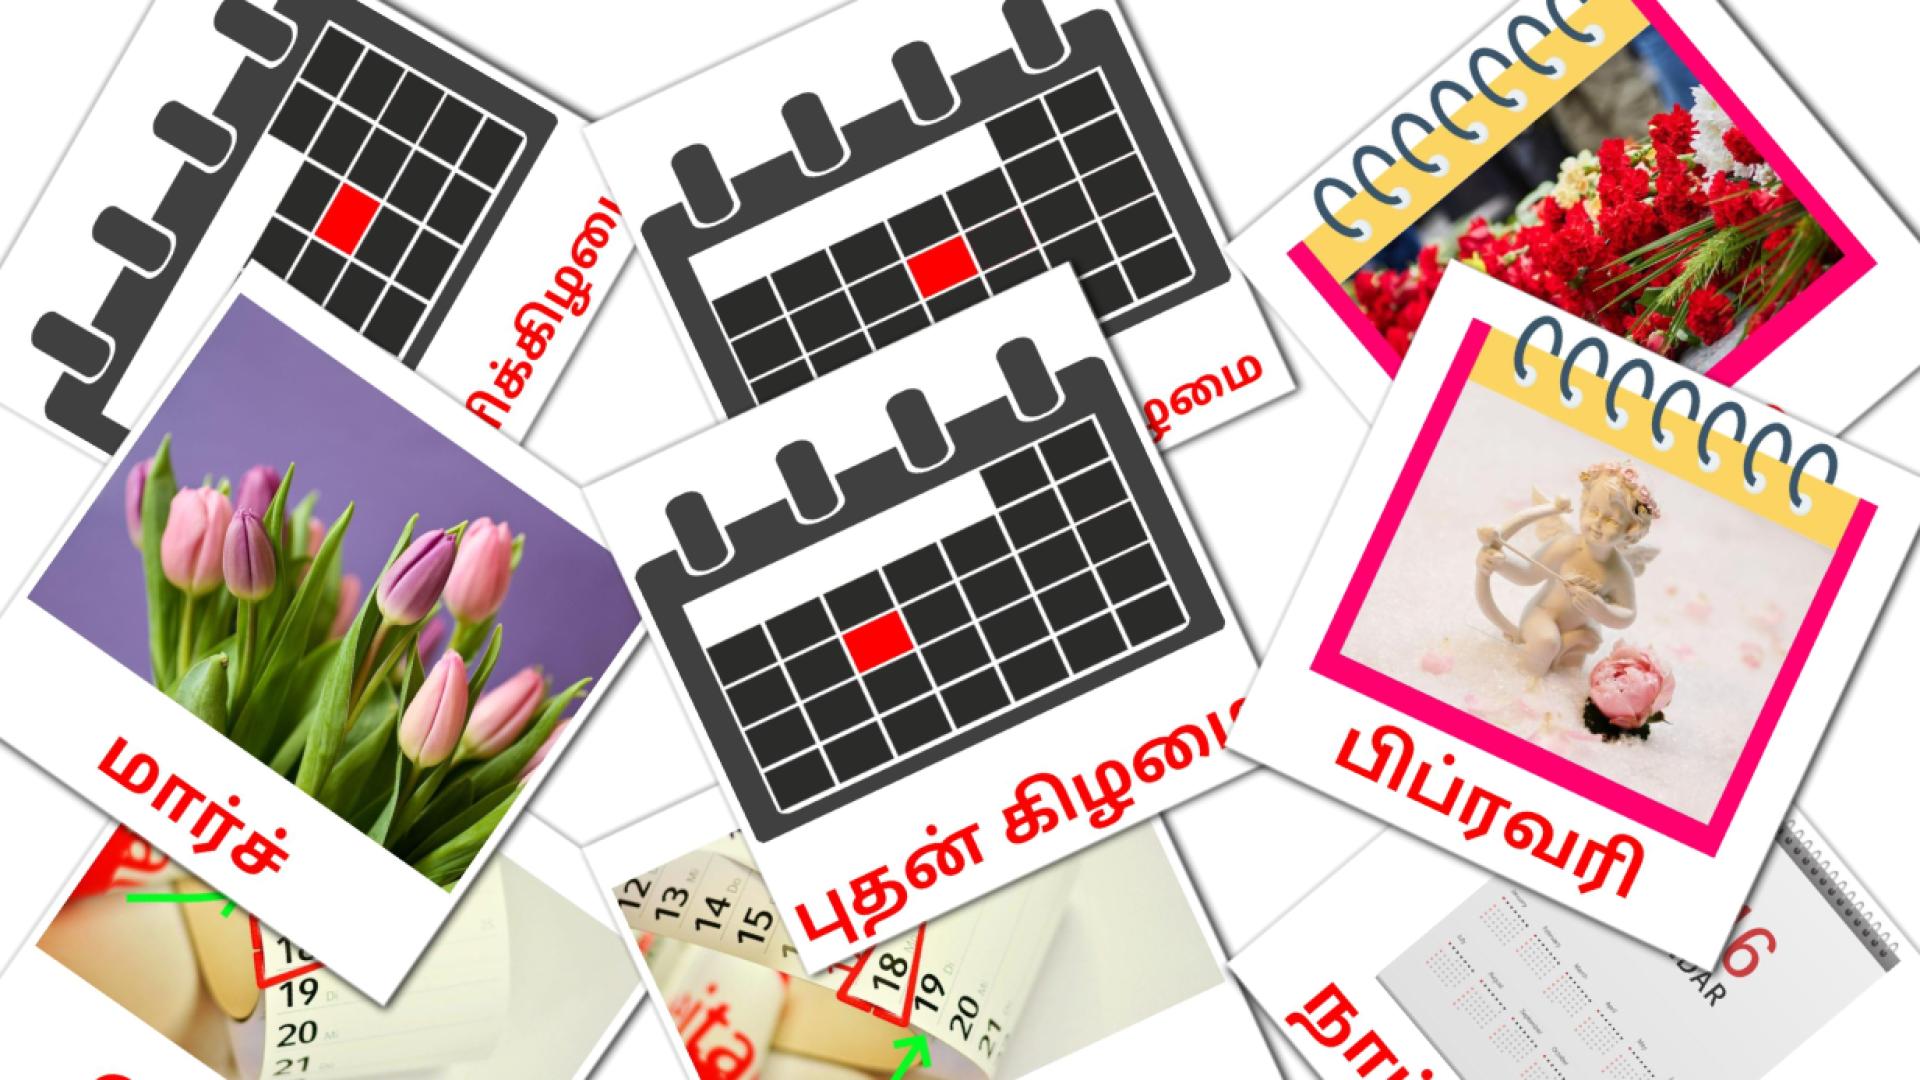 Карточки Домана நாட்காட்டி на тамильском языке